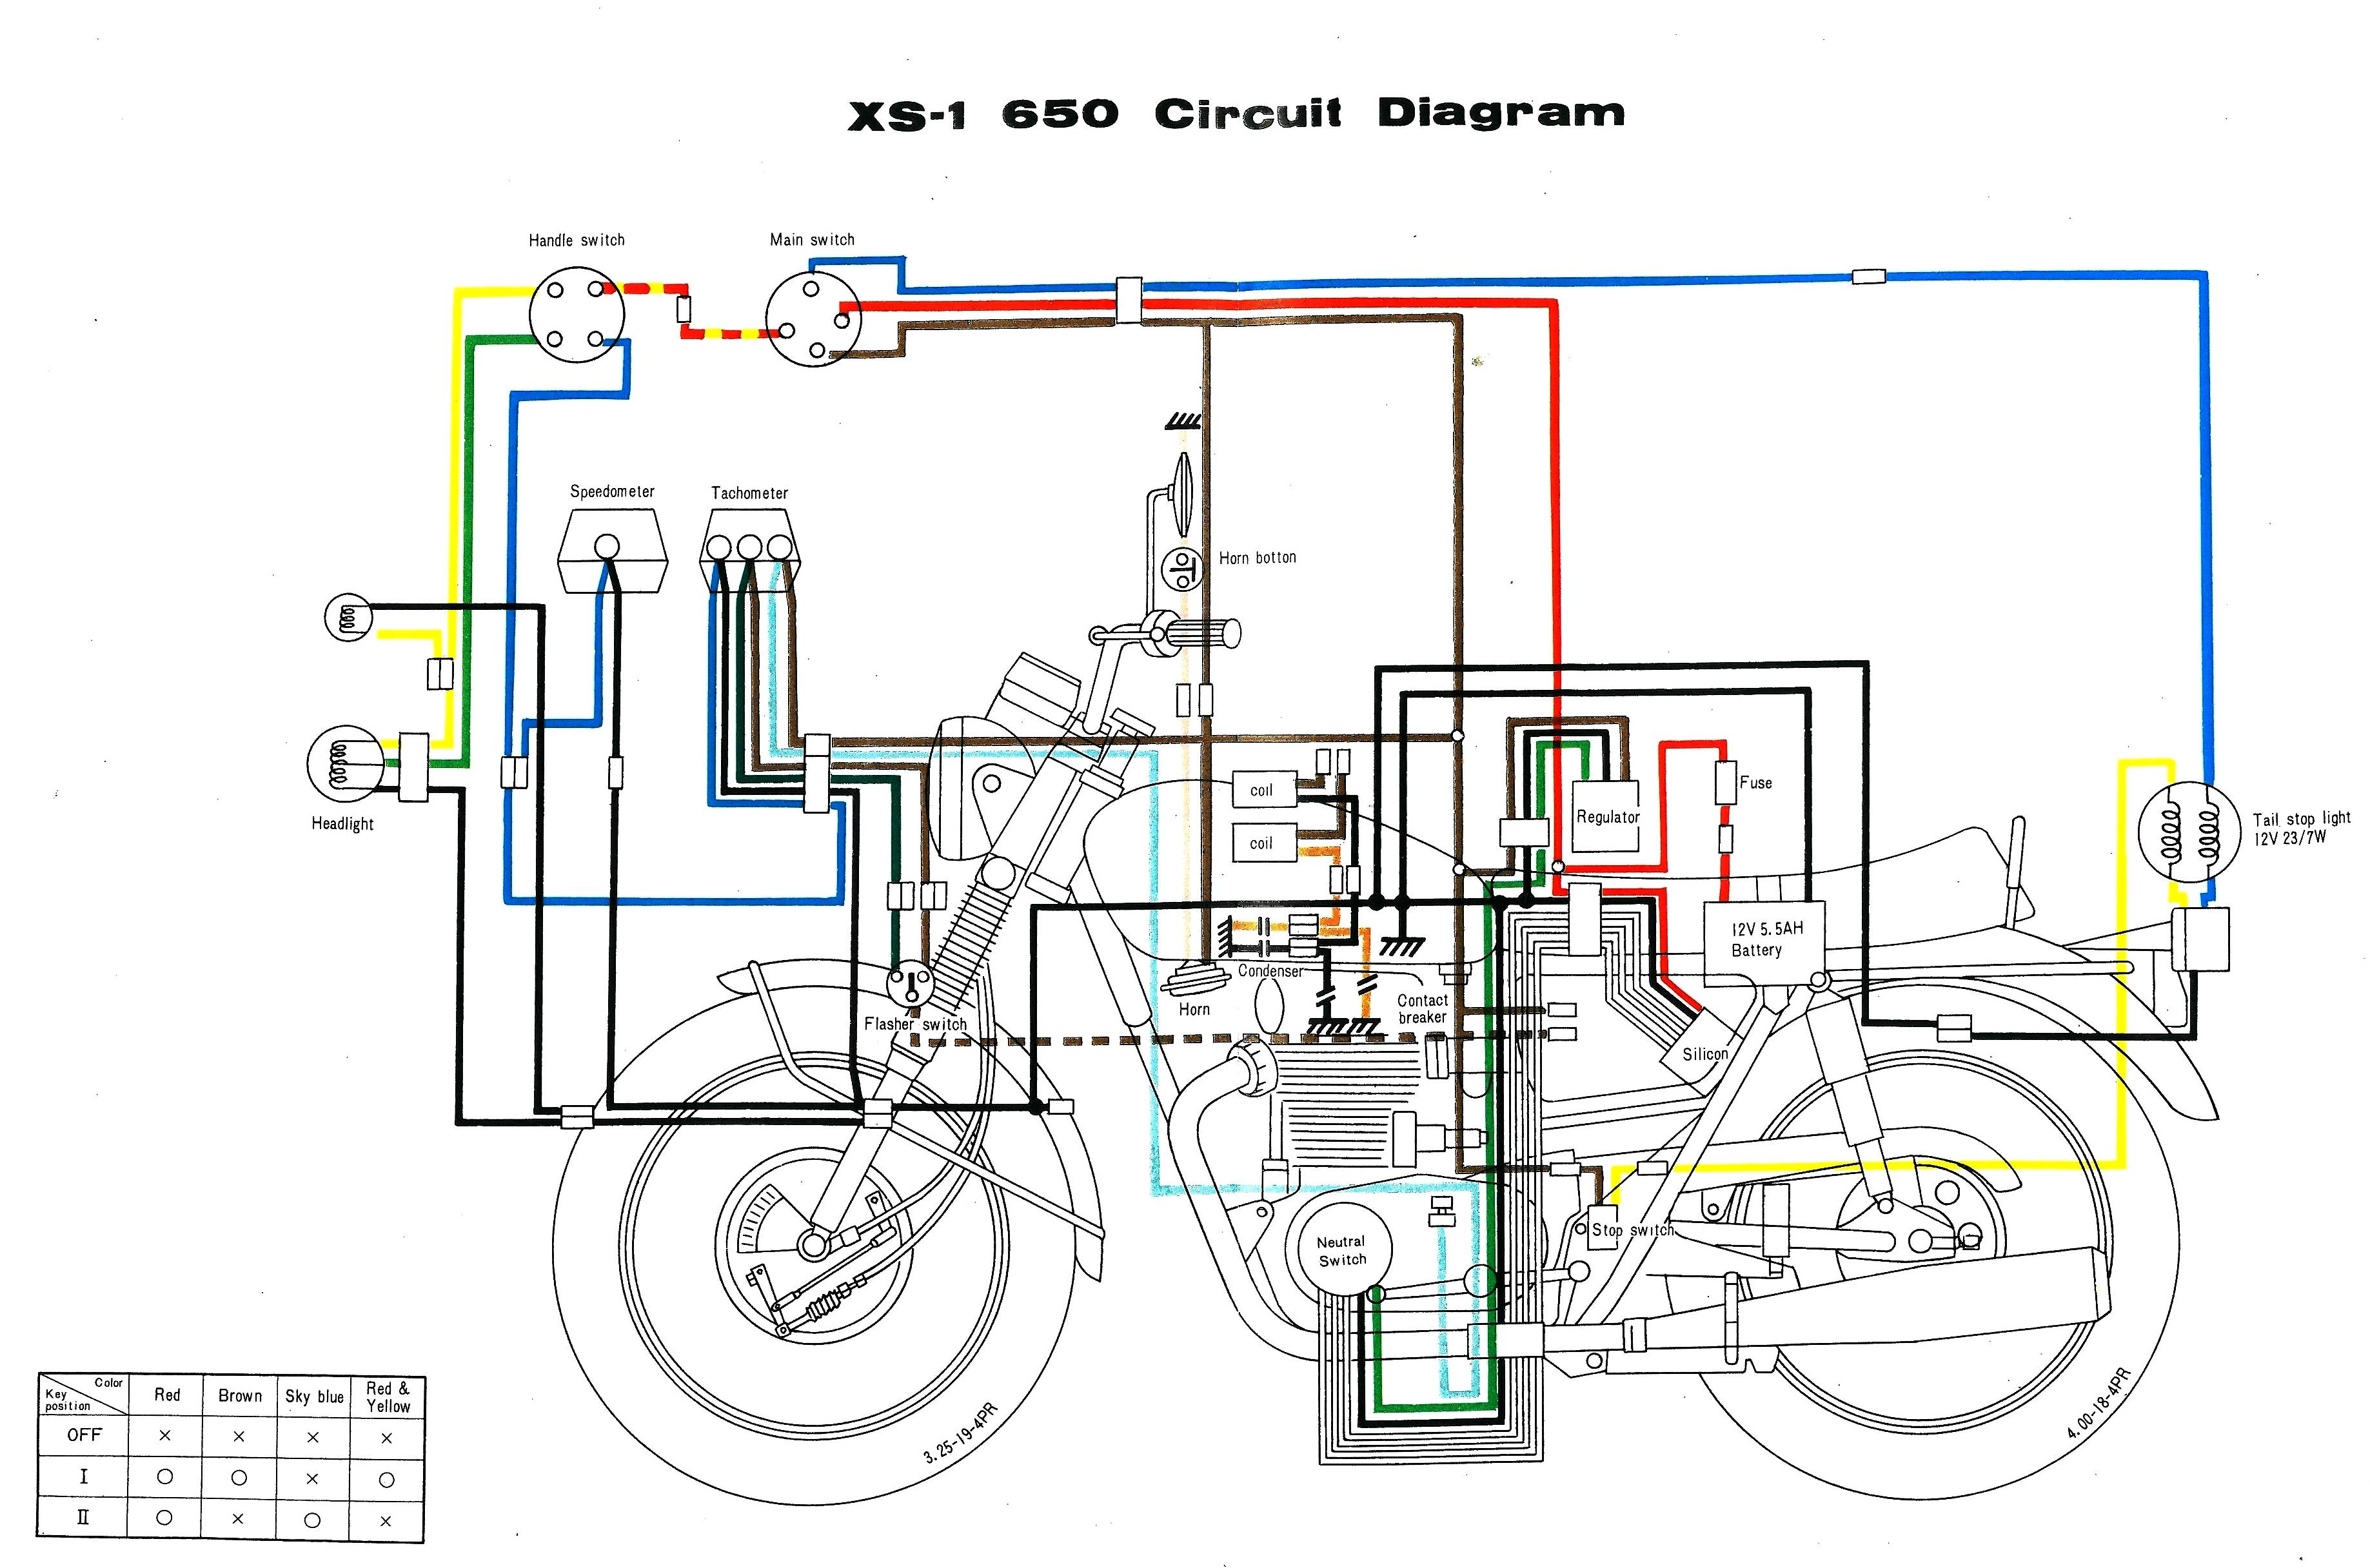 pt864 wiring diagram